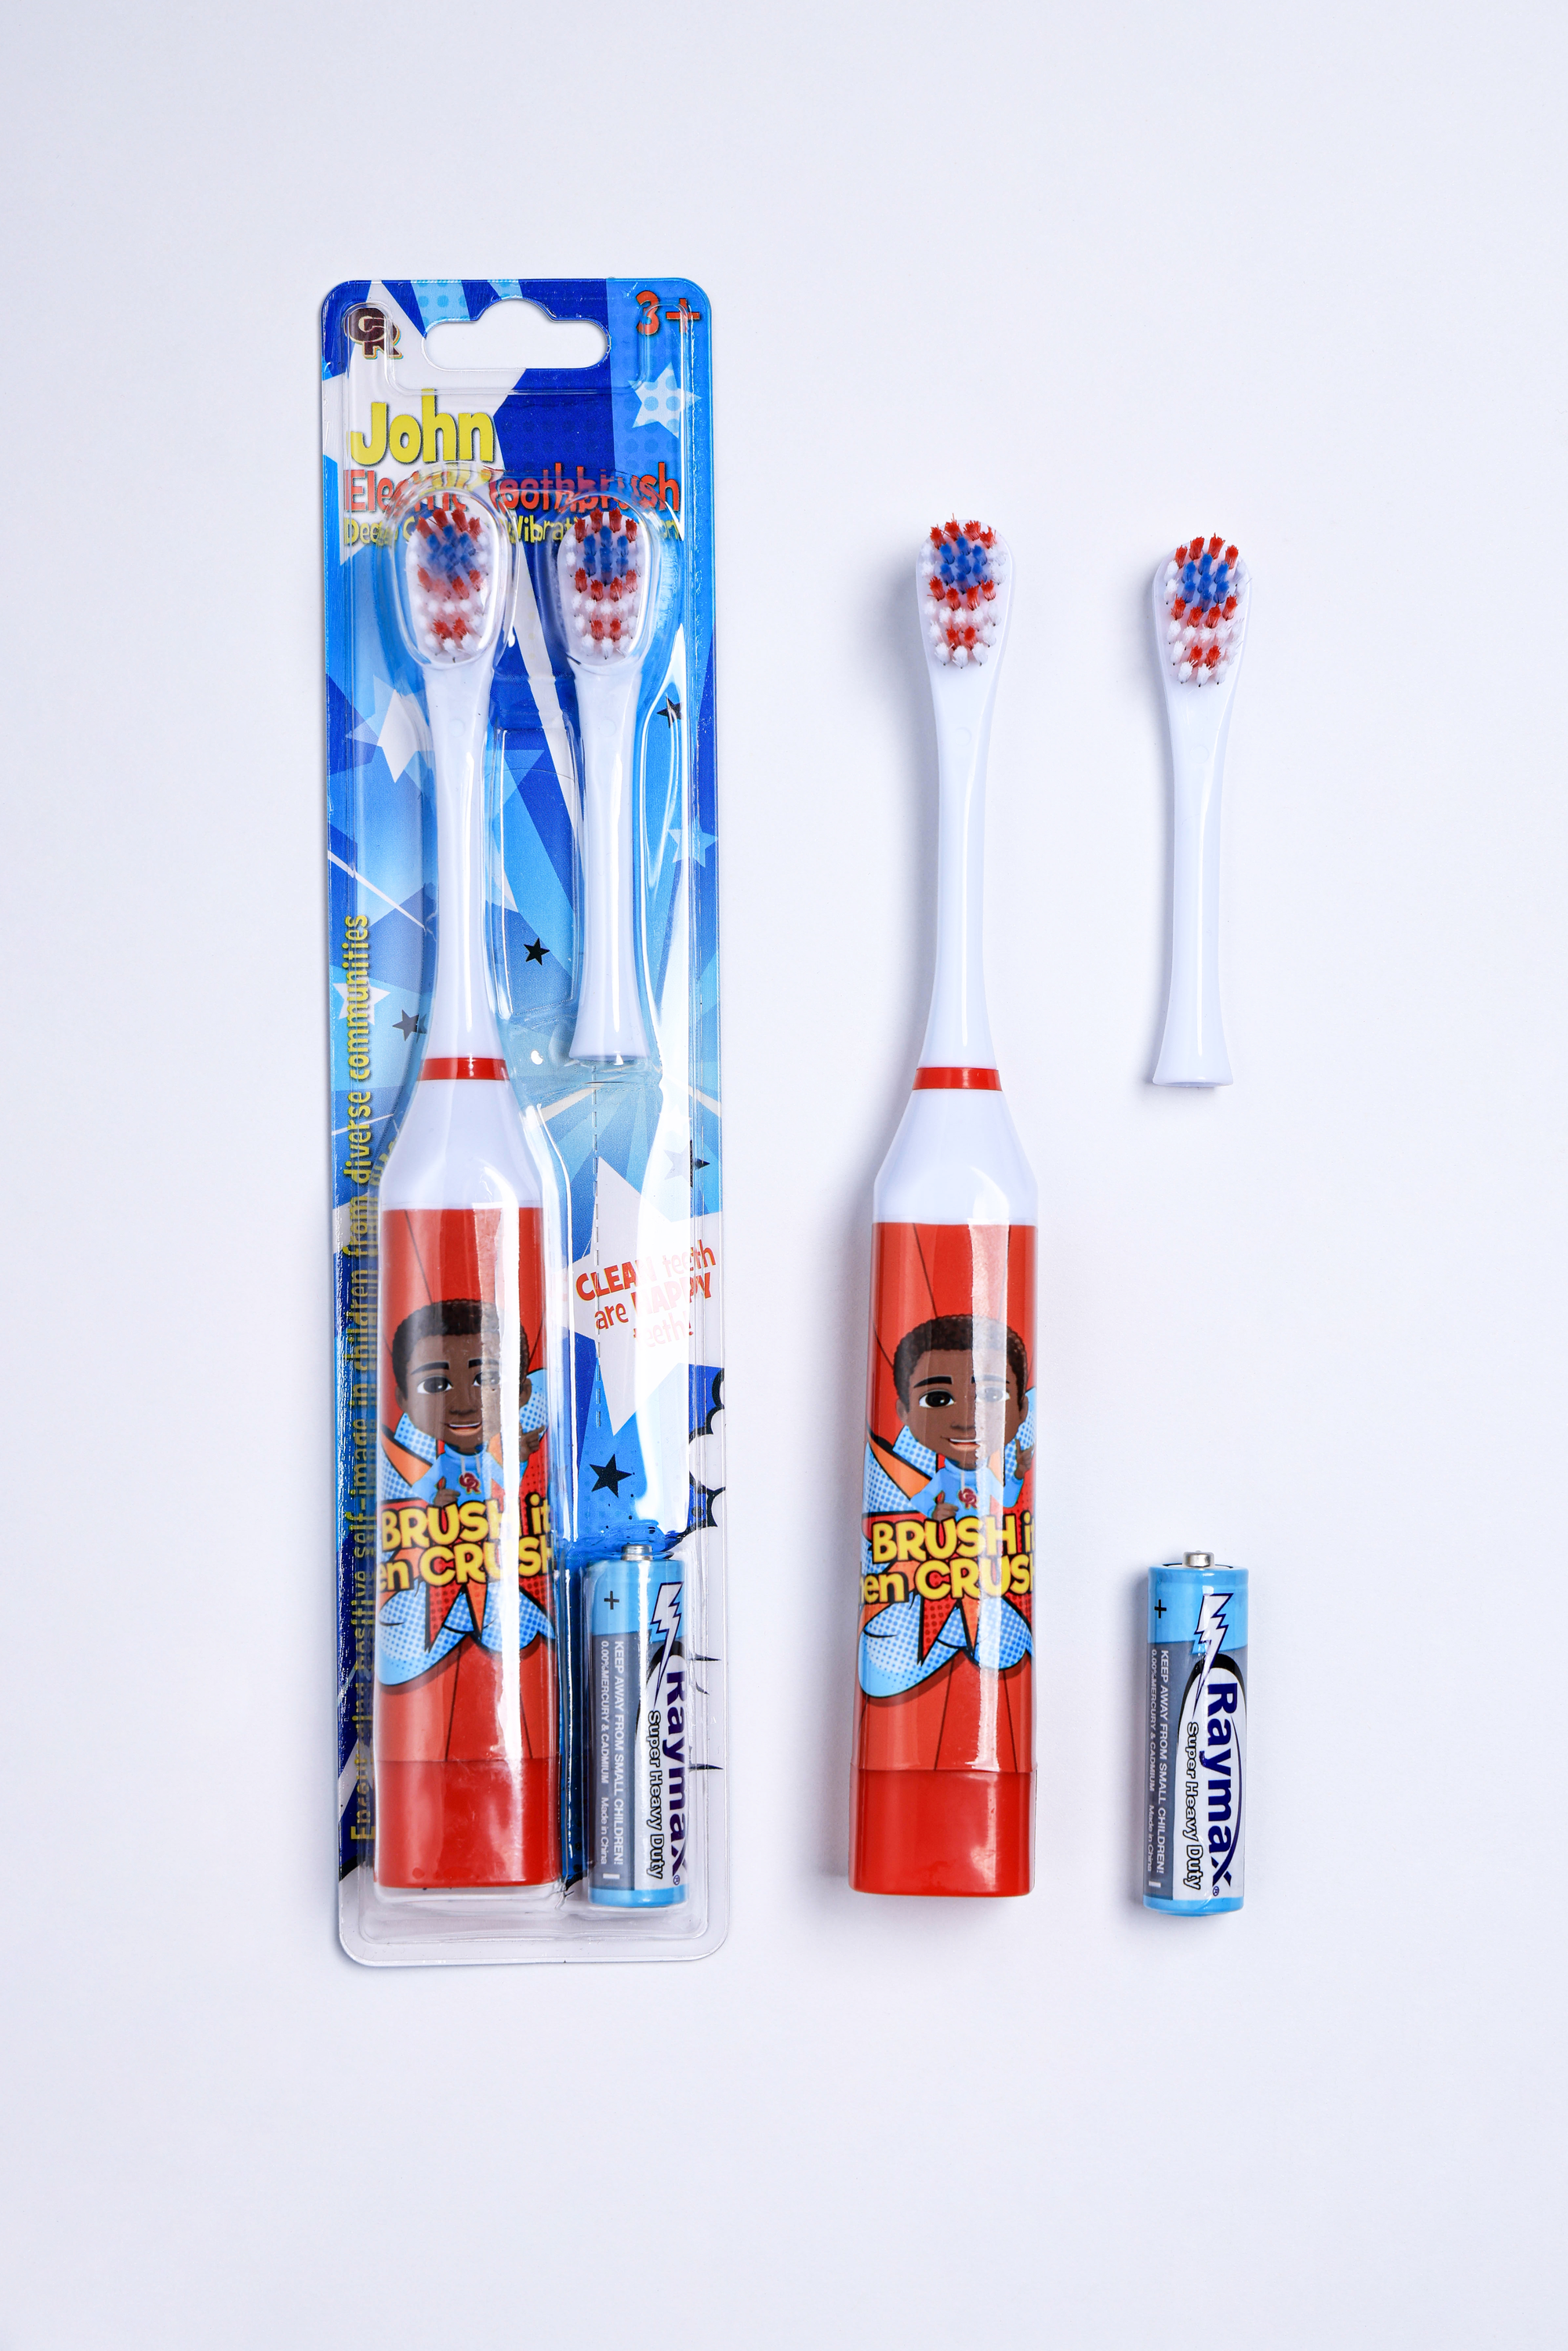 John Electric Toothbrush